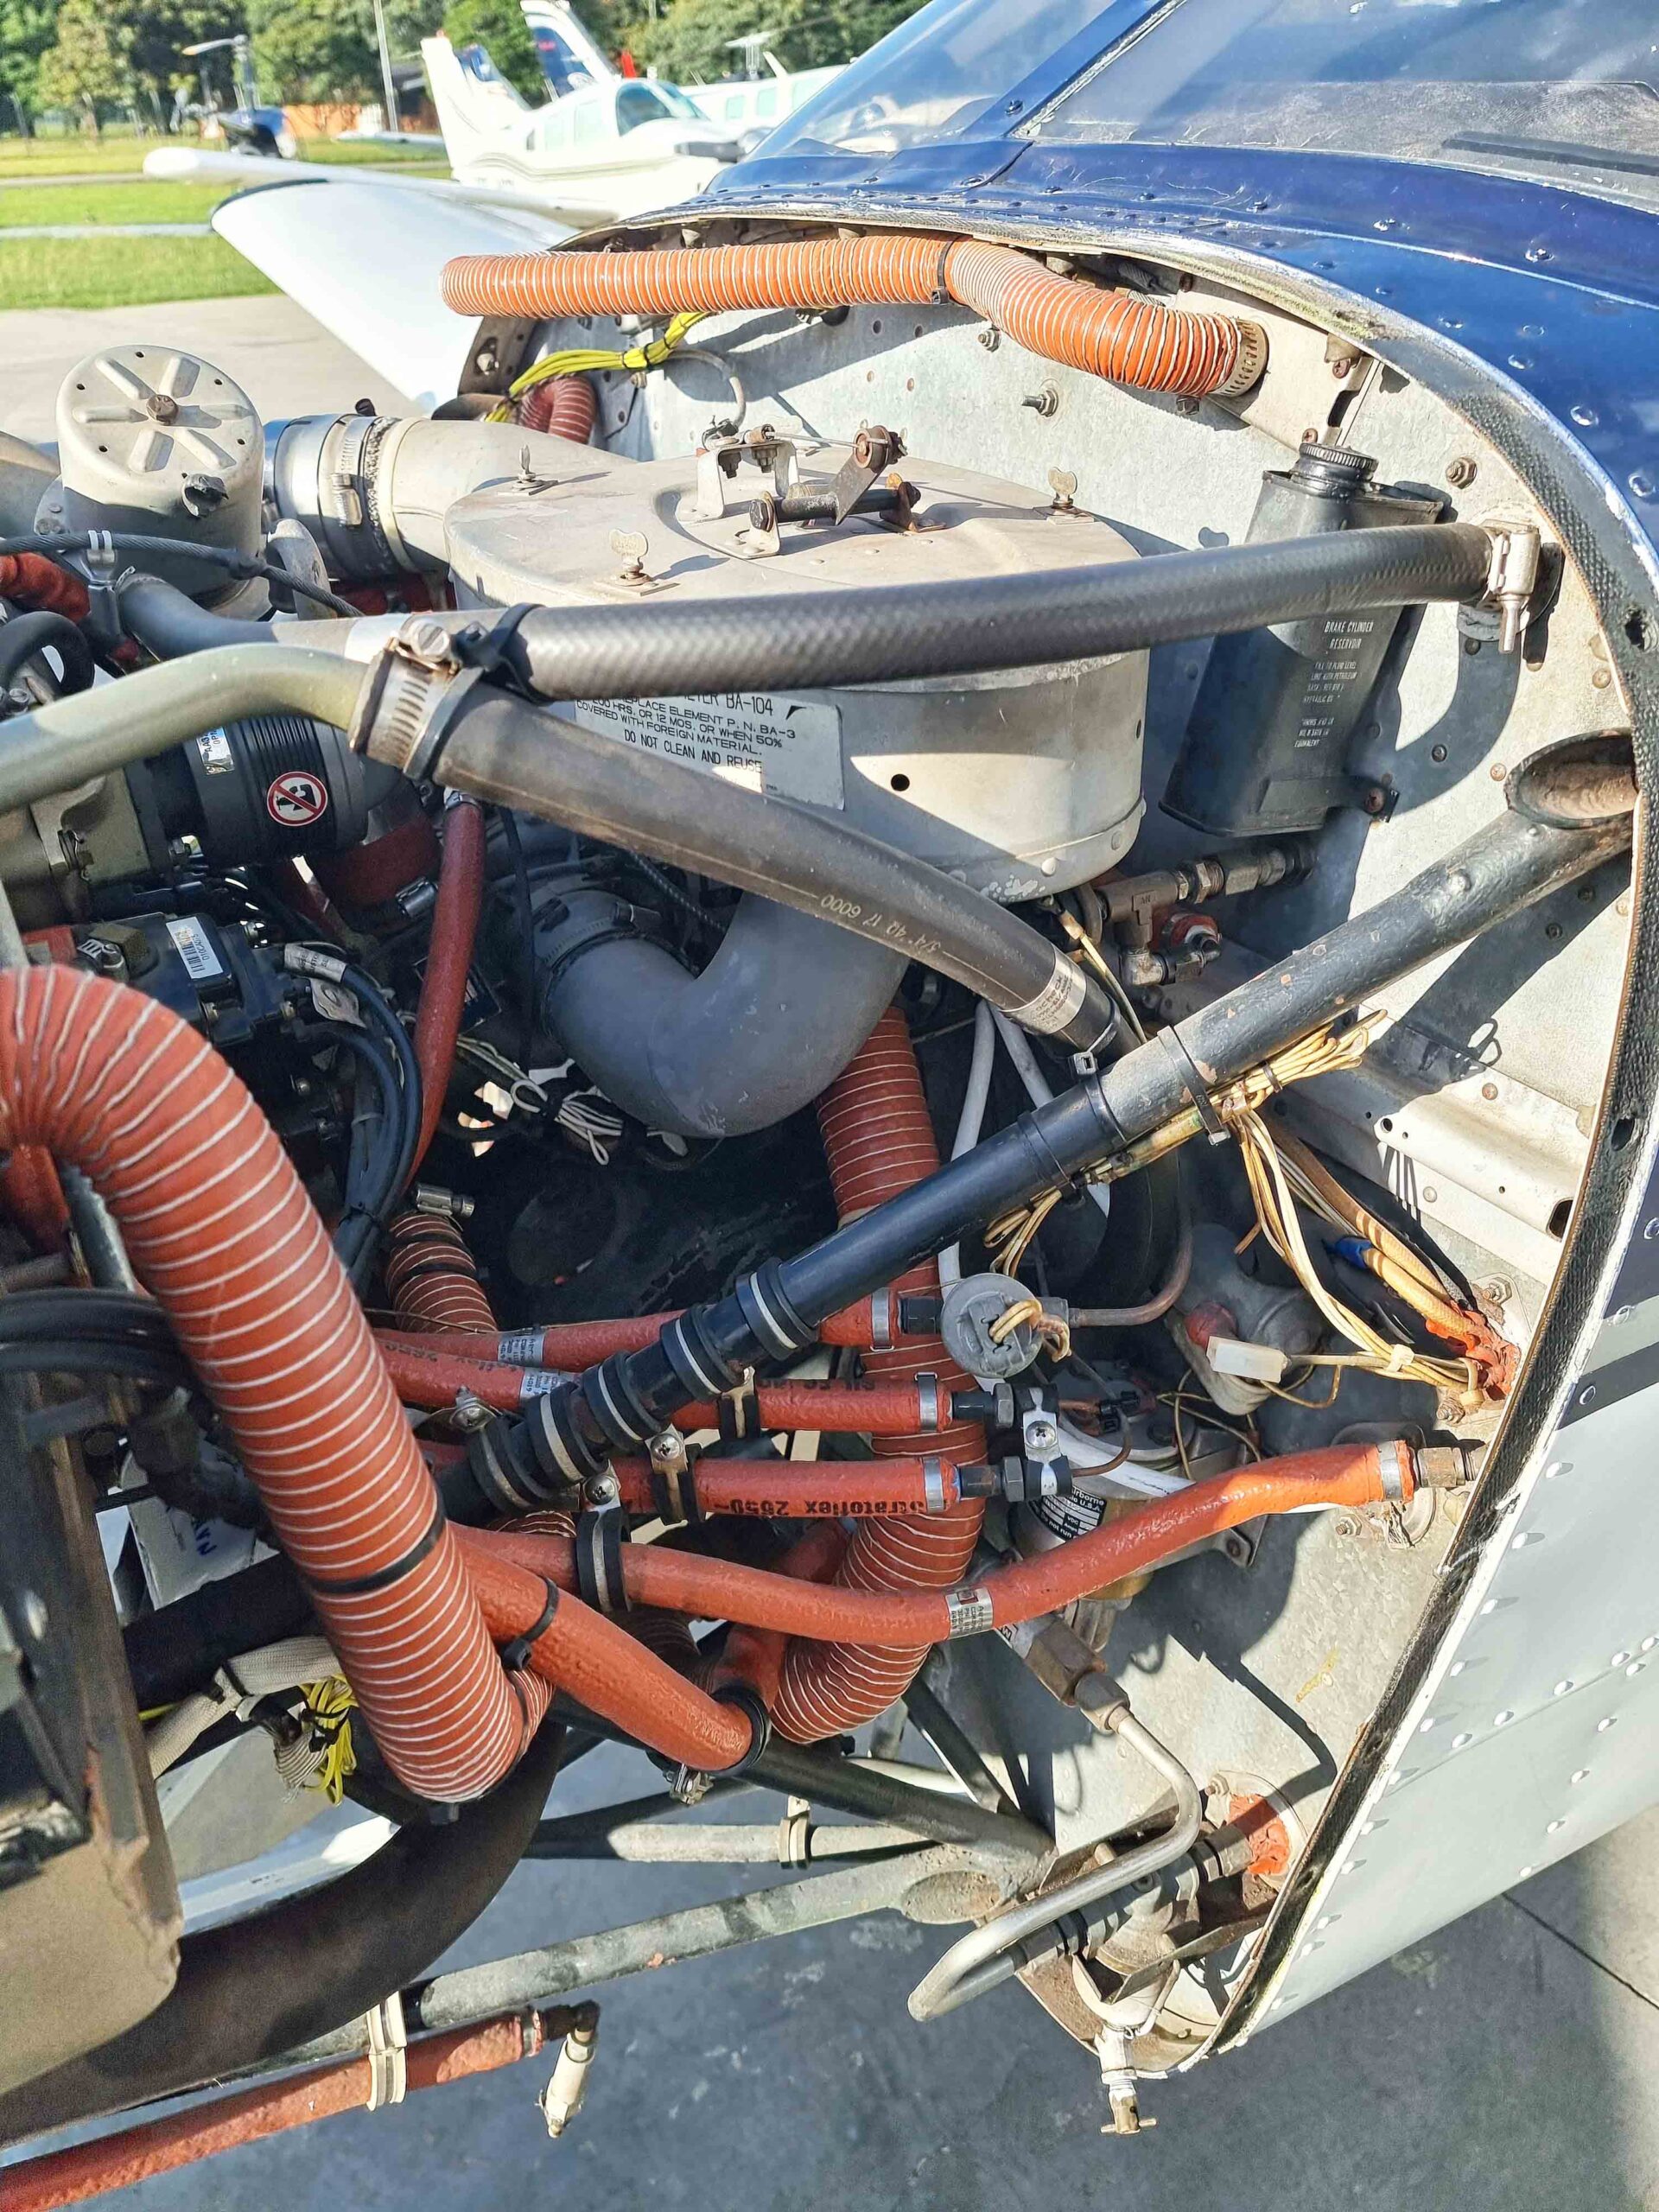 Avião Piper Arrow Turbo III – Ano 1977 – 3.200 Horas Totais